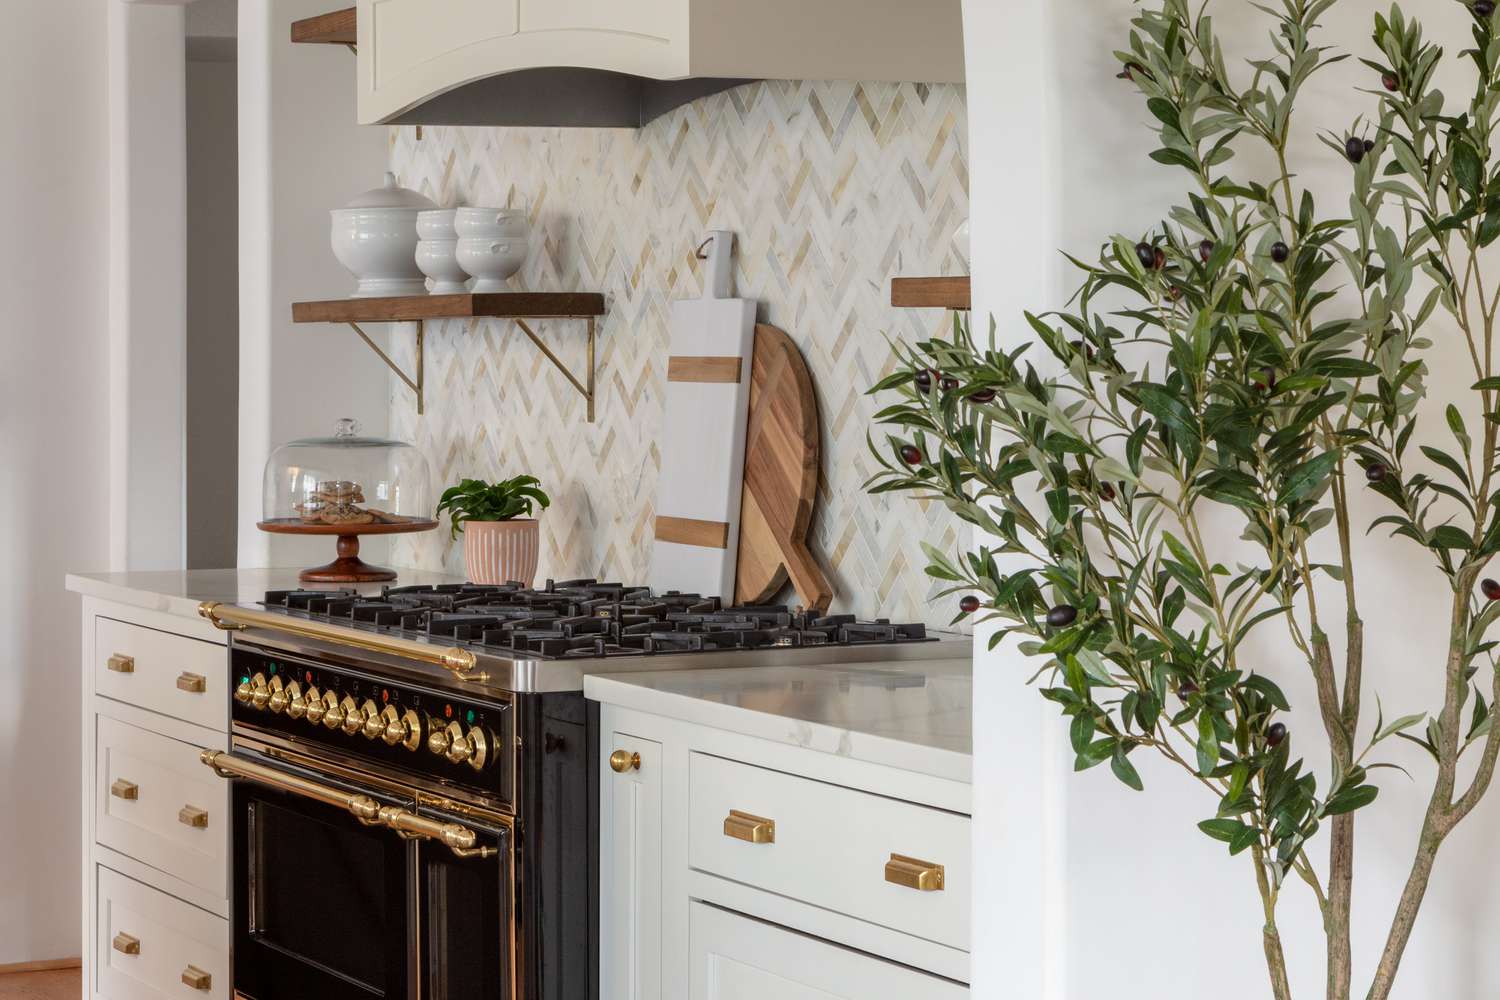 Die Küche im Haus von Erin Coren verfügt über einen schwarzen Herd, offene Regale und weiße Schränke mit goldenen Beschlägen, die wie Zehentreter aussehen